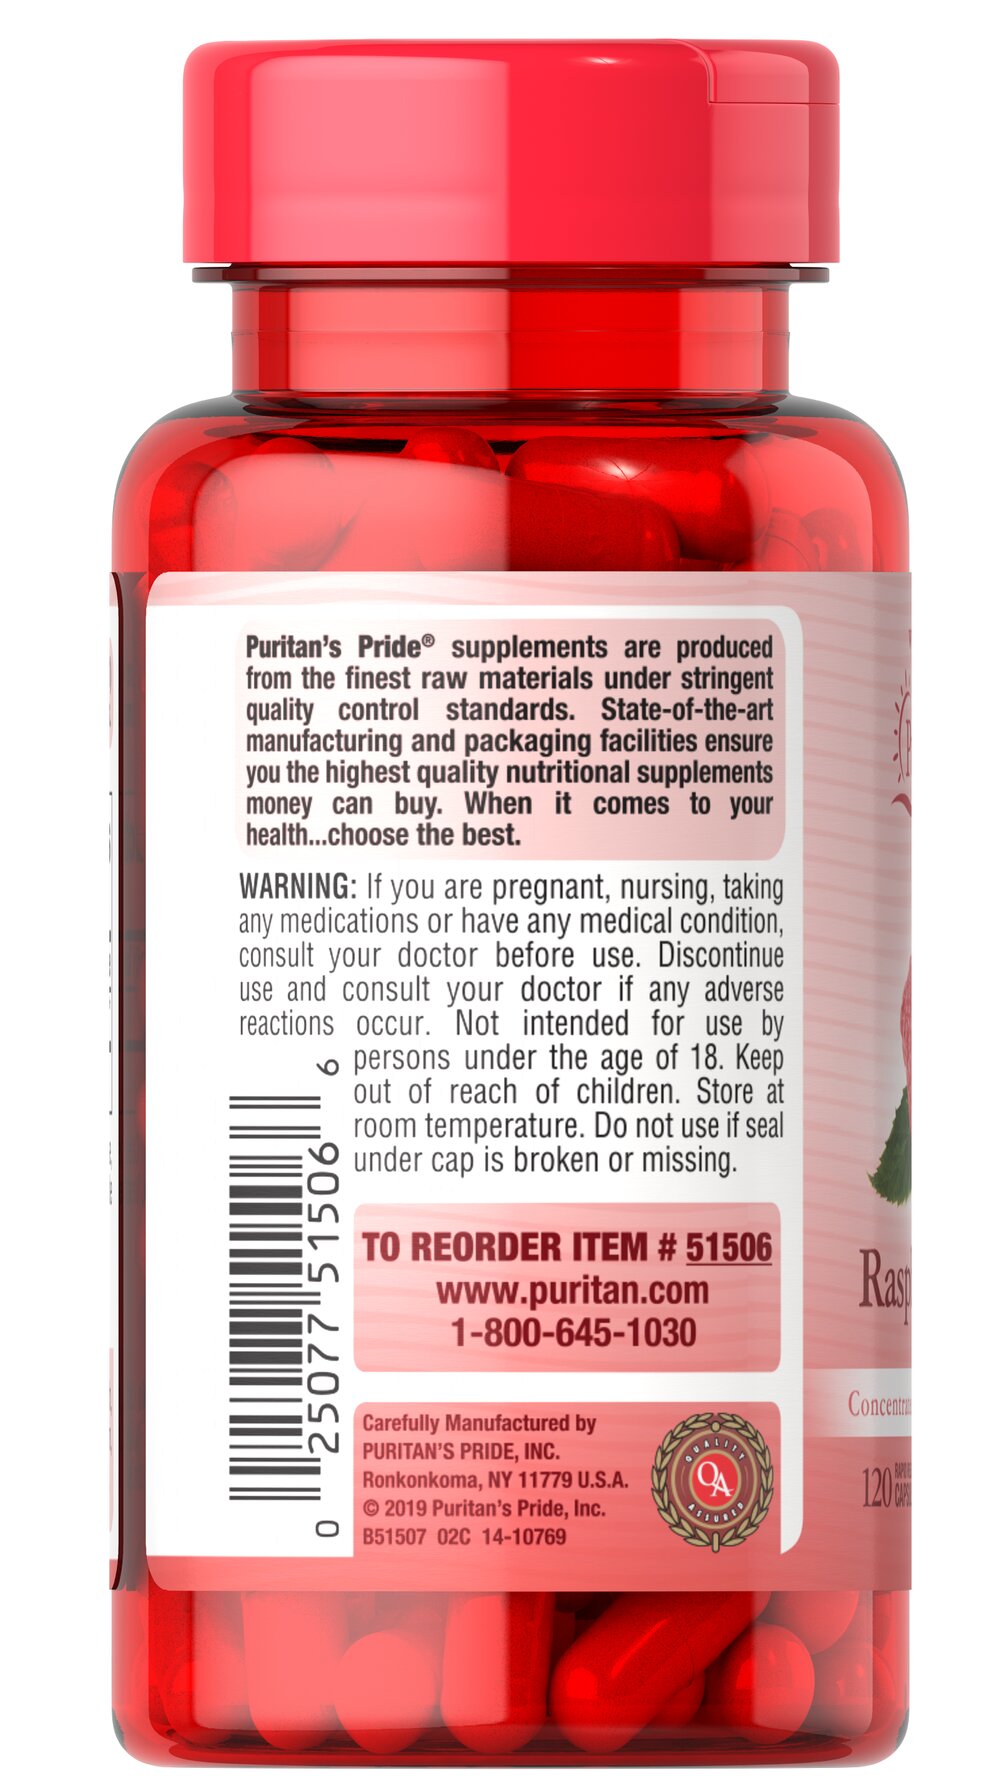 Hỗ trợ giảm cân quả mâm xôi Puritan's Pride - Raspberry Ketones Mỹ từ nguyên liệu thiên nhiên an toàn hiệu quả - OZ Slim Store